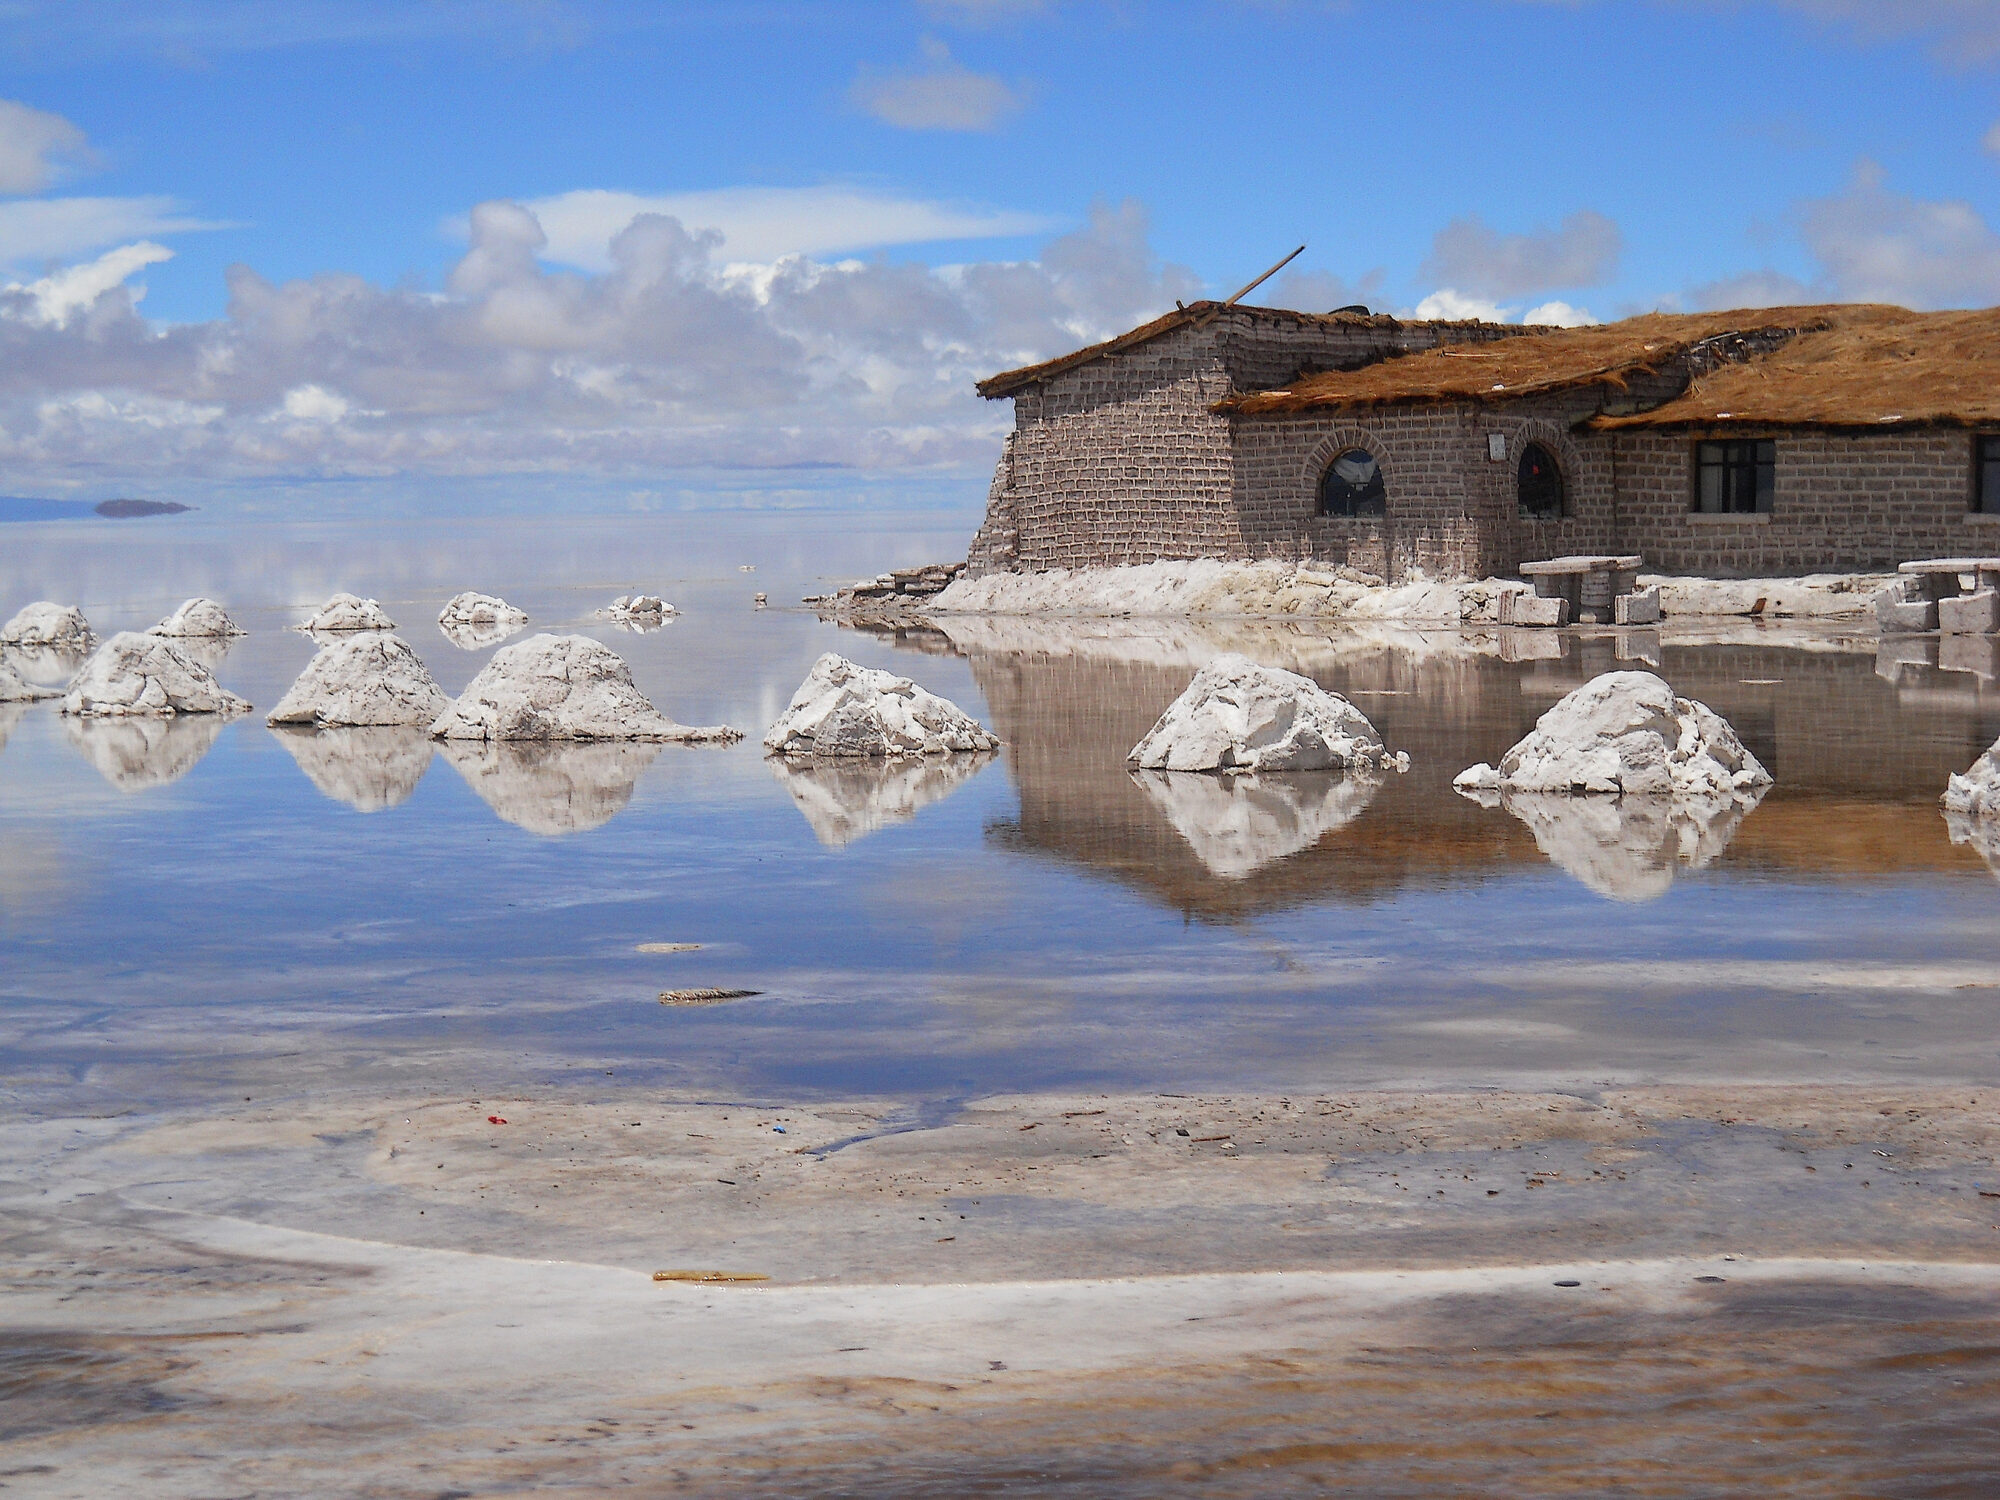 Piscinas de evaporação no Salar de Uyuni, Bolívia.